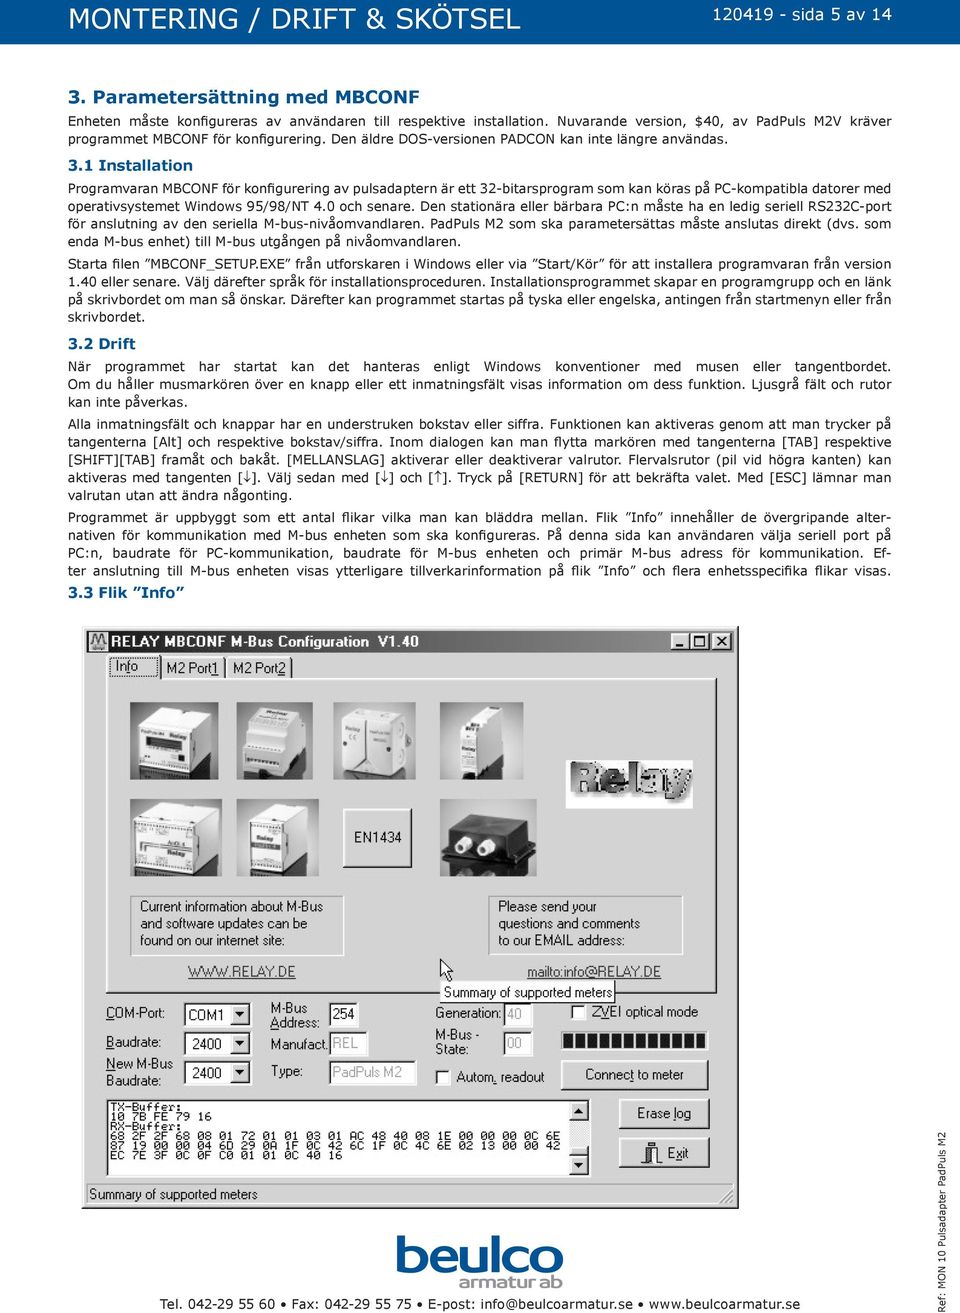 1 Installation Programvaran MBCONF för konfigurering av pulsadaptern är ett 32-bitarsprogram som kan köras på PC-kompatibla datorer med operativsystemet Windows 95/98/NT 4.0 och senare.